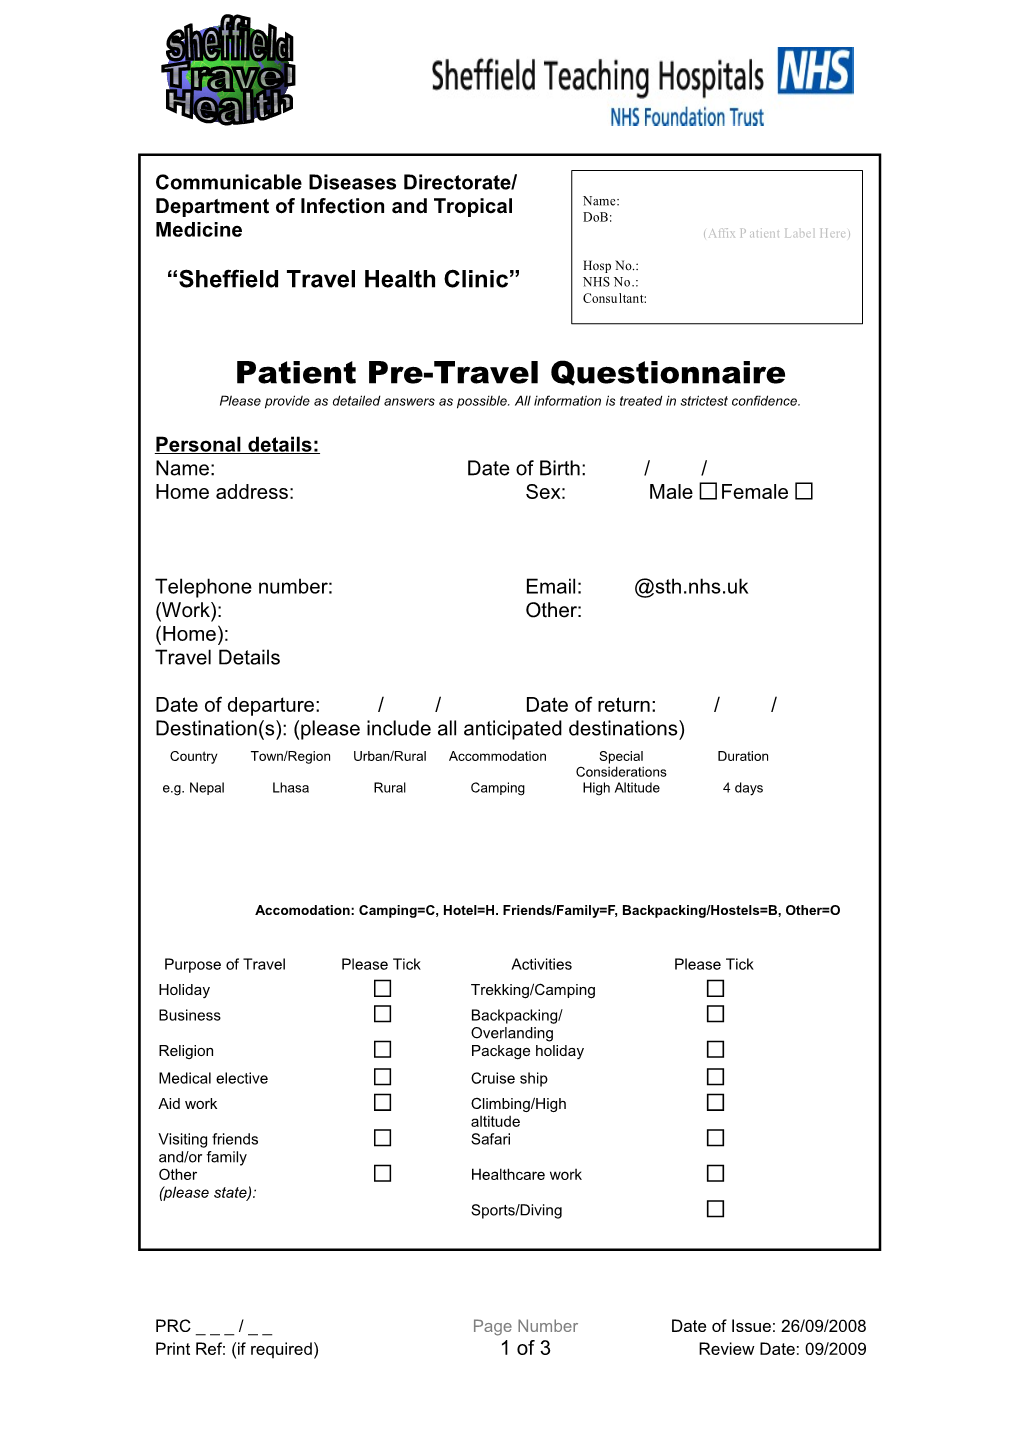 Patient Pre-Travel Questionnaire